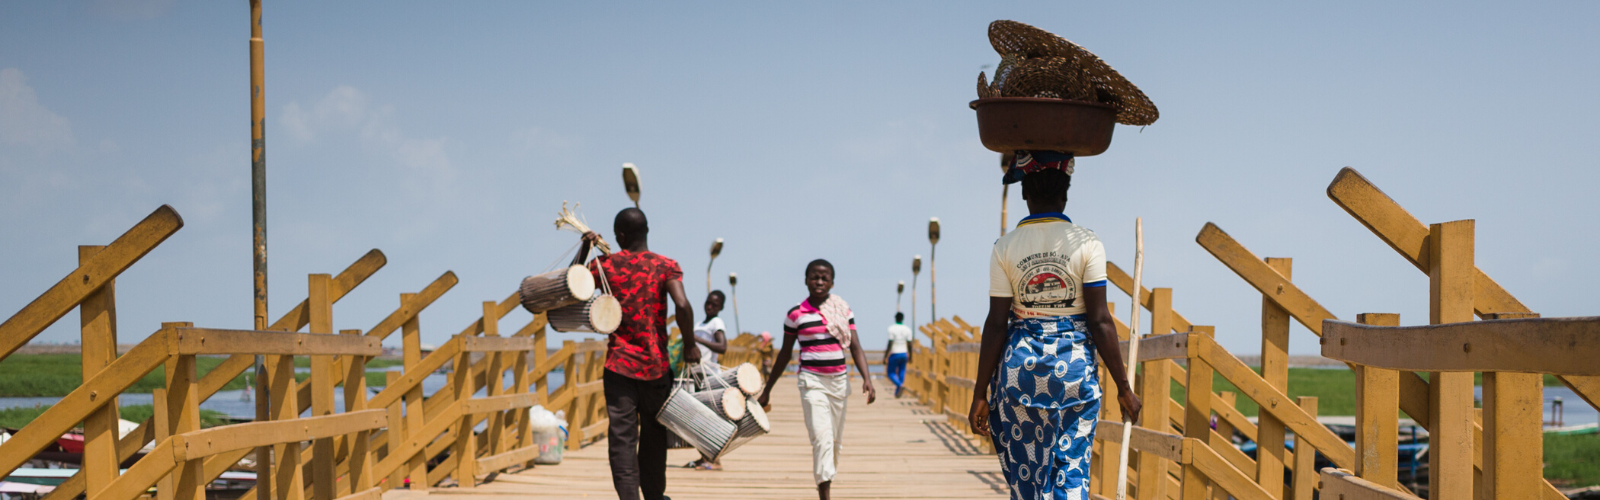 Le Bénin, un voyage authentique entre culture et histoire  Double Sens